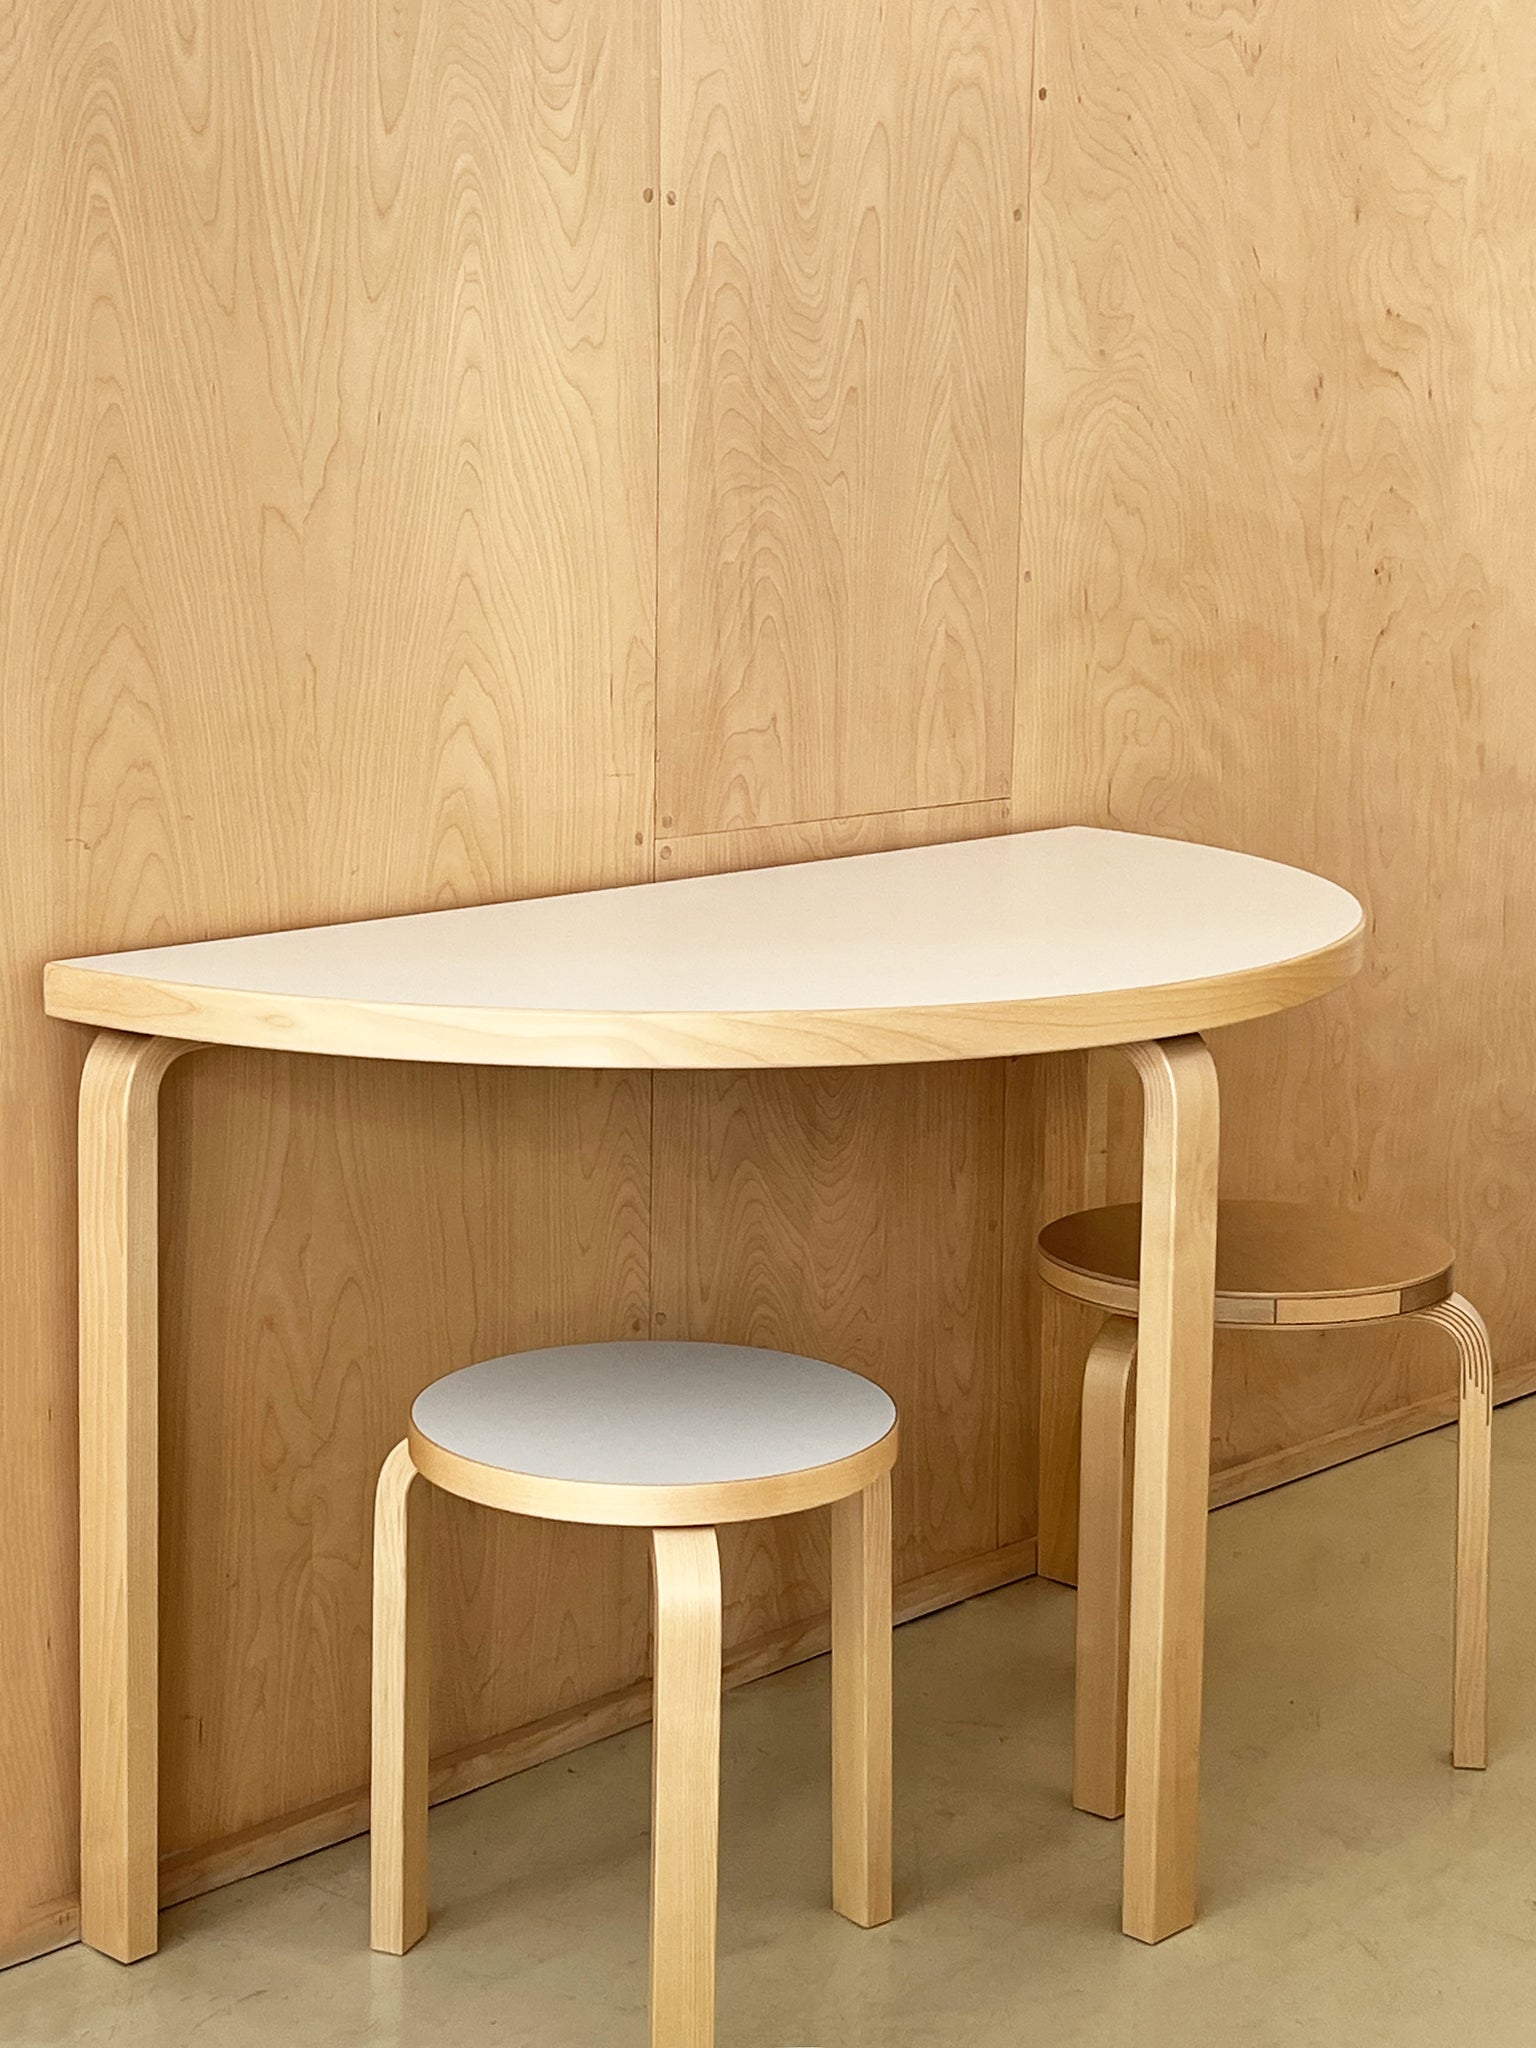 Half-Round Table 95 by Alvar Aalto